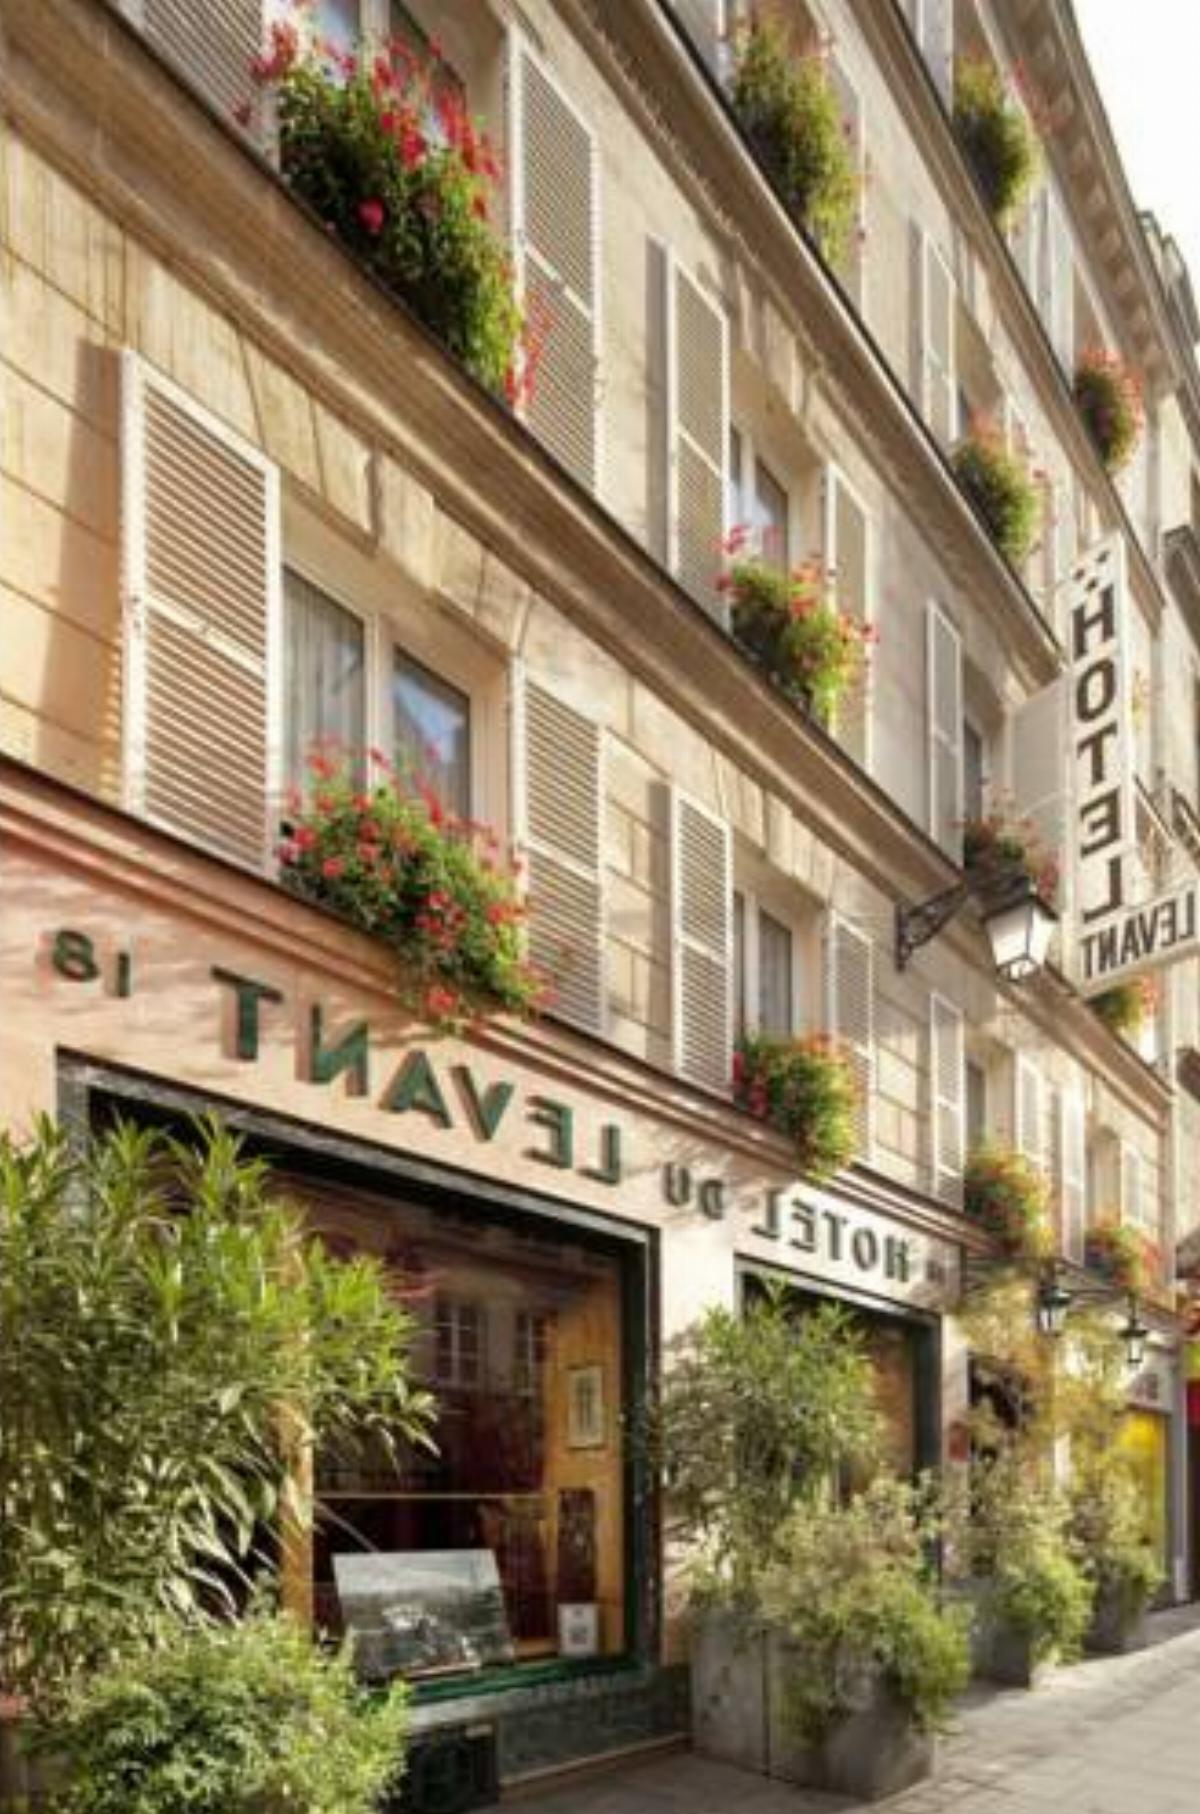 Hôtel du Levant Hotel Paris France